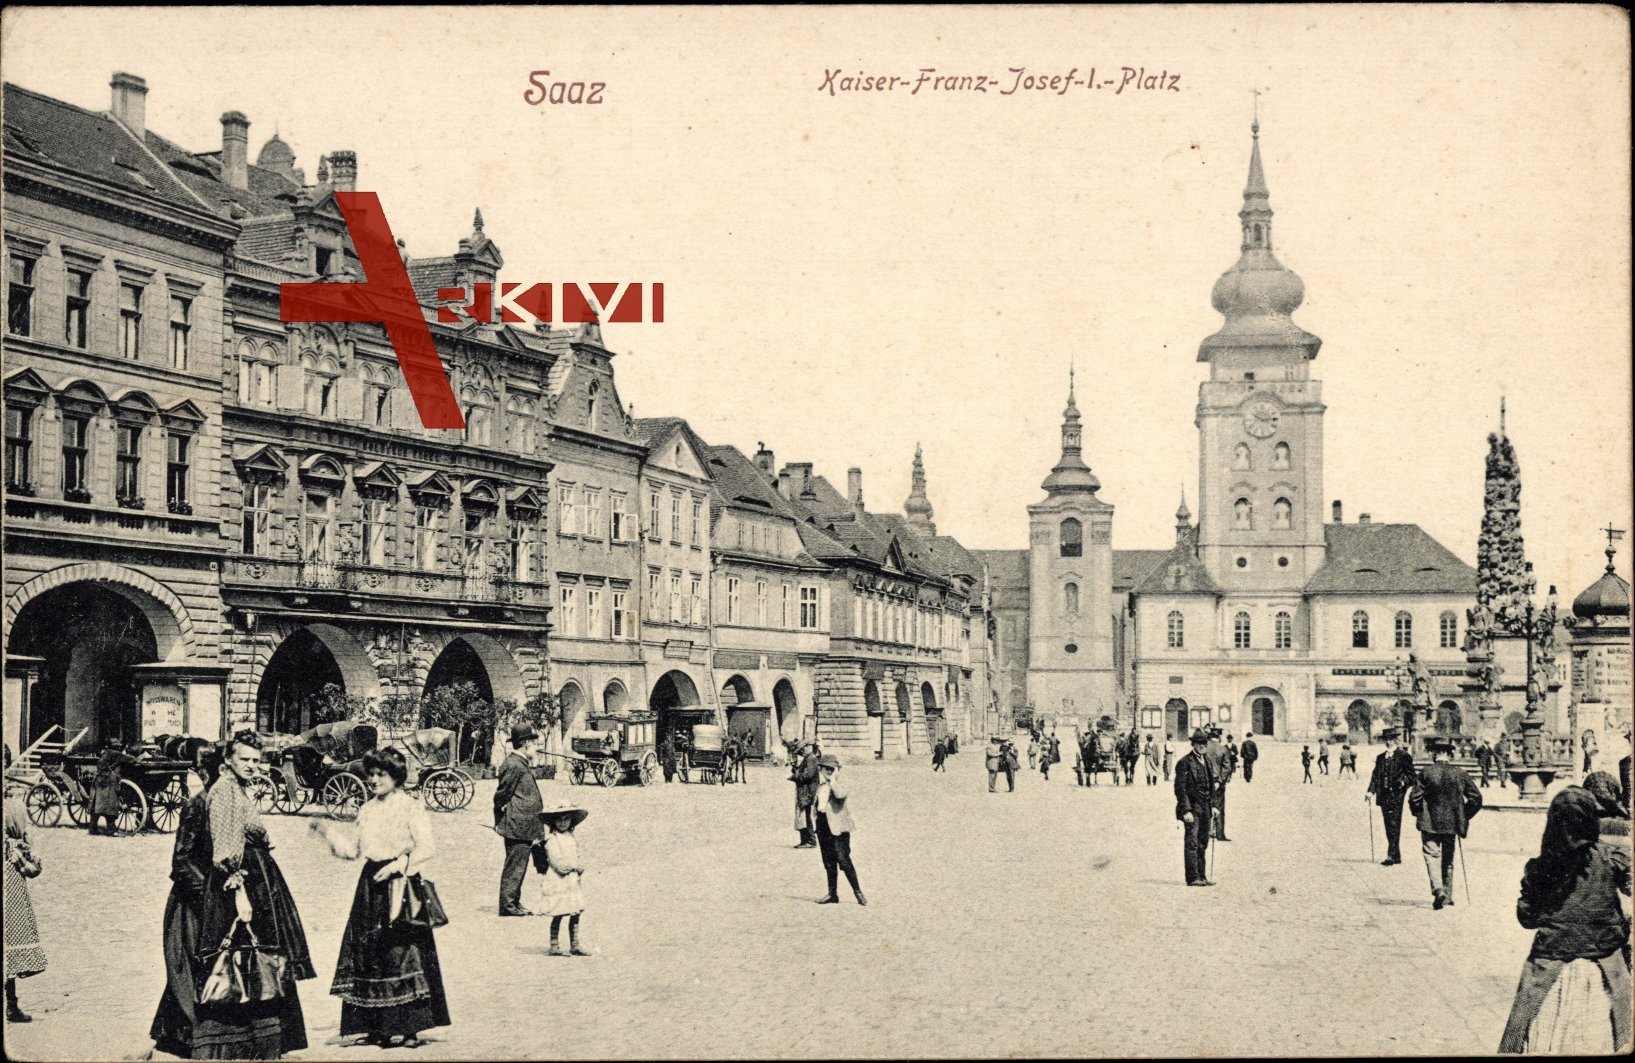 Blick auf den Kaiser Franz Josef I. Platz in Saaz (Žatec) Region Aussig zur Kaiserzeit